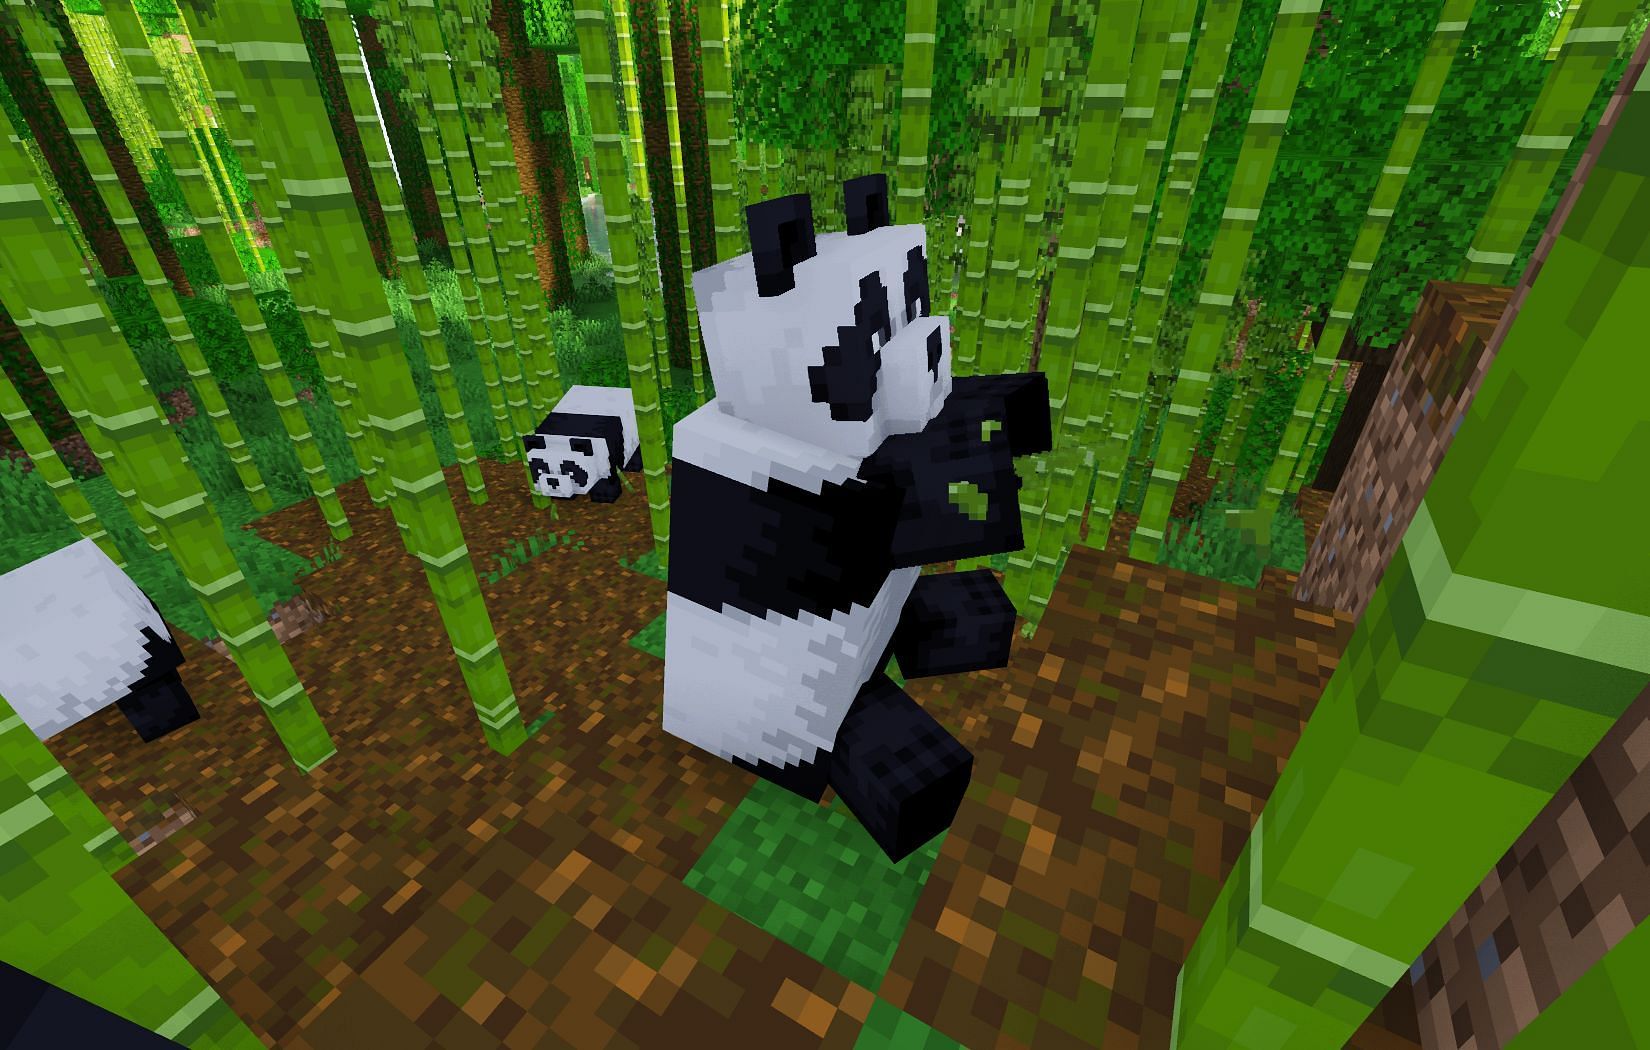 Pandas eating bamboo (Image via Mojang)